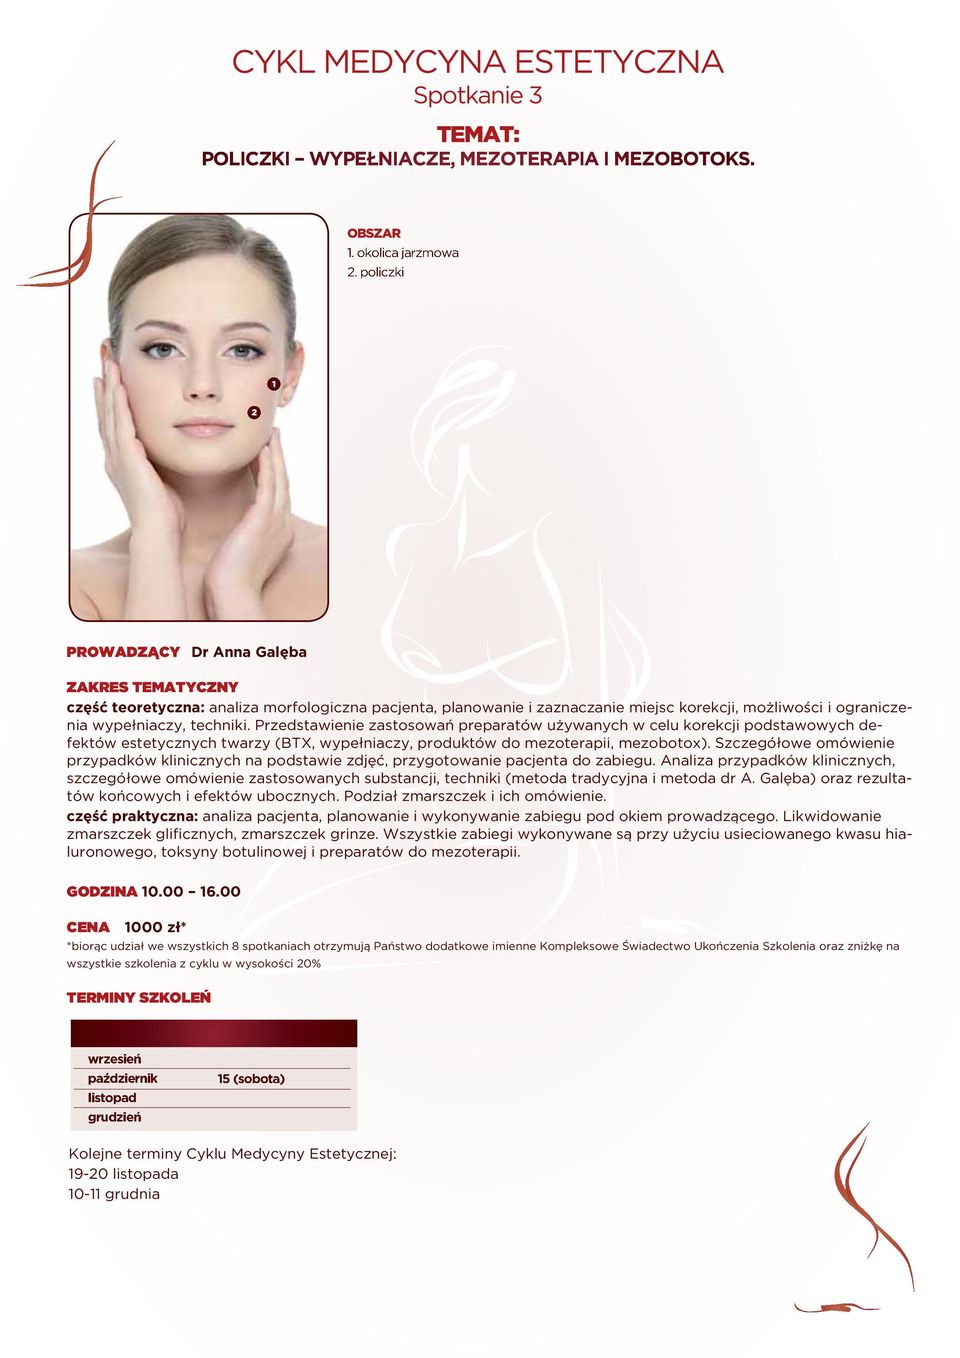 Przedstawienie zastosowań preparatów używanych w celu korekcji podstawowych defektów estetycznych twarzy (BTX, wypełniaczy, produktów do mezoterapii, mezobotox).